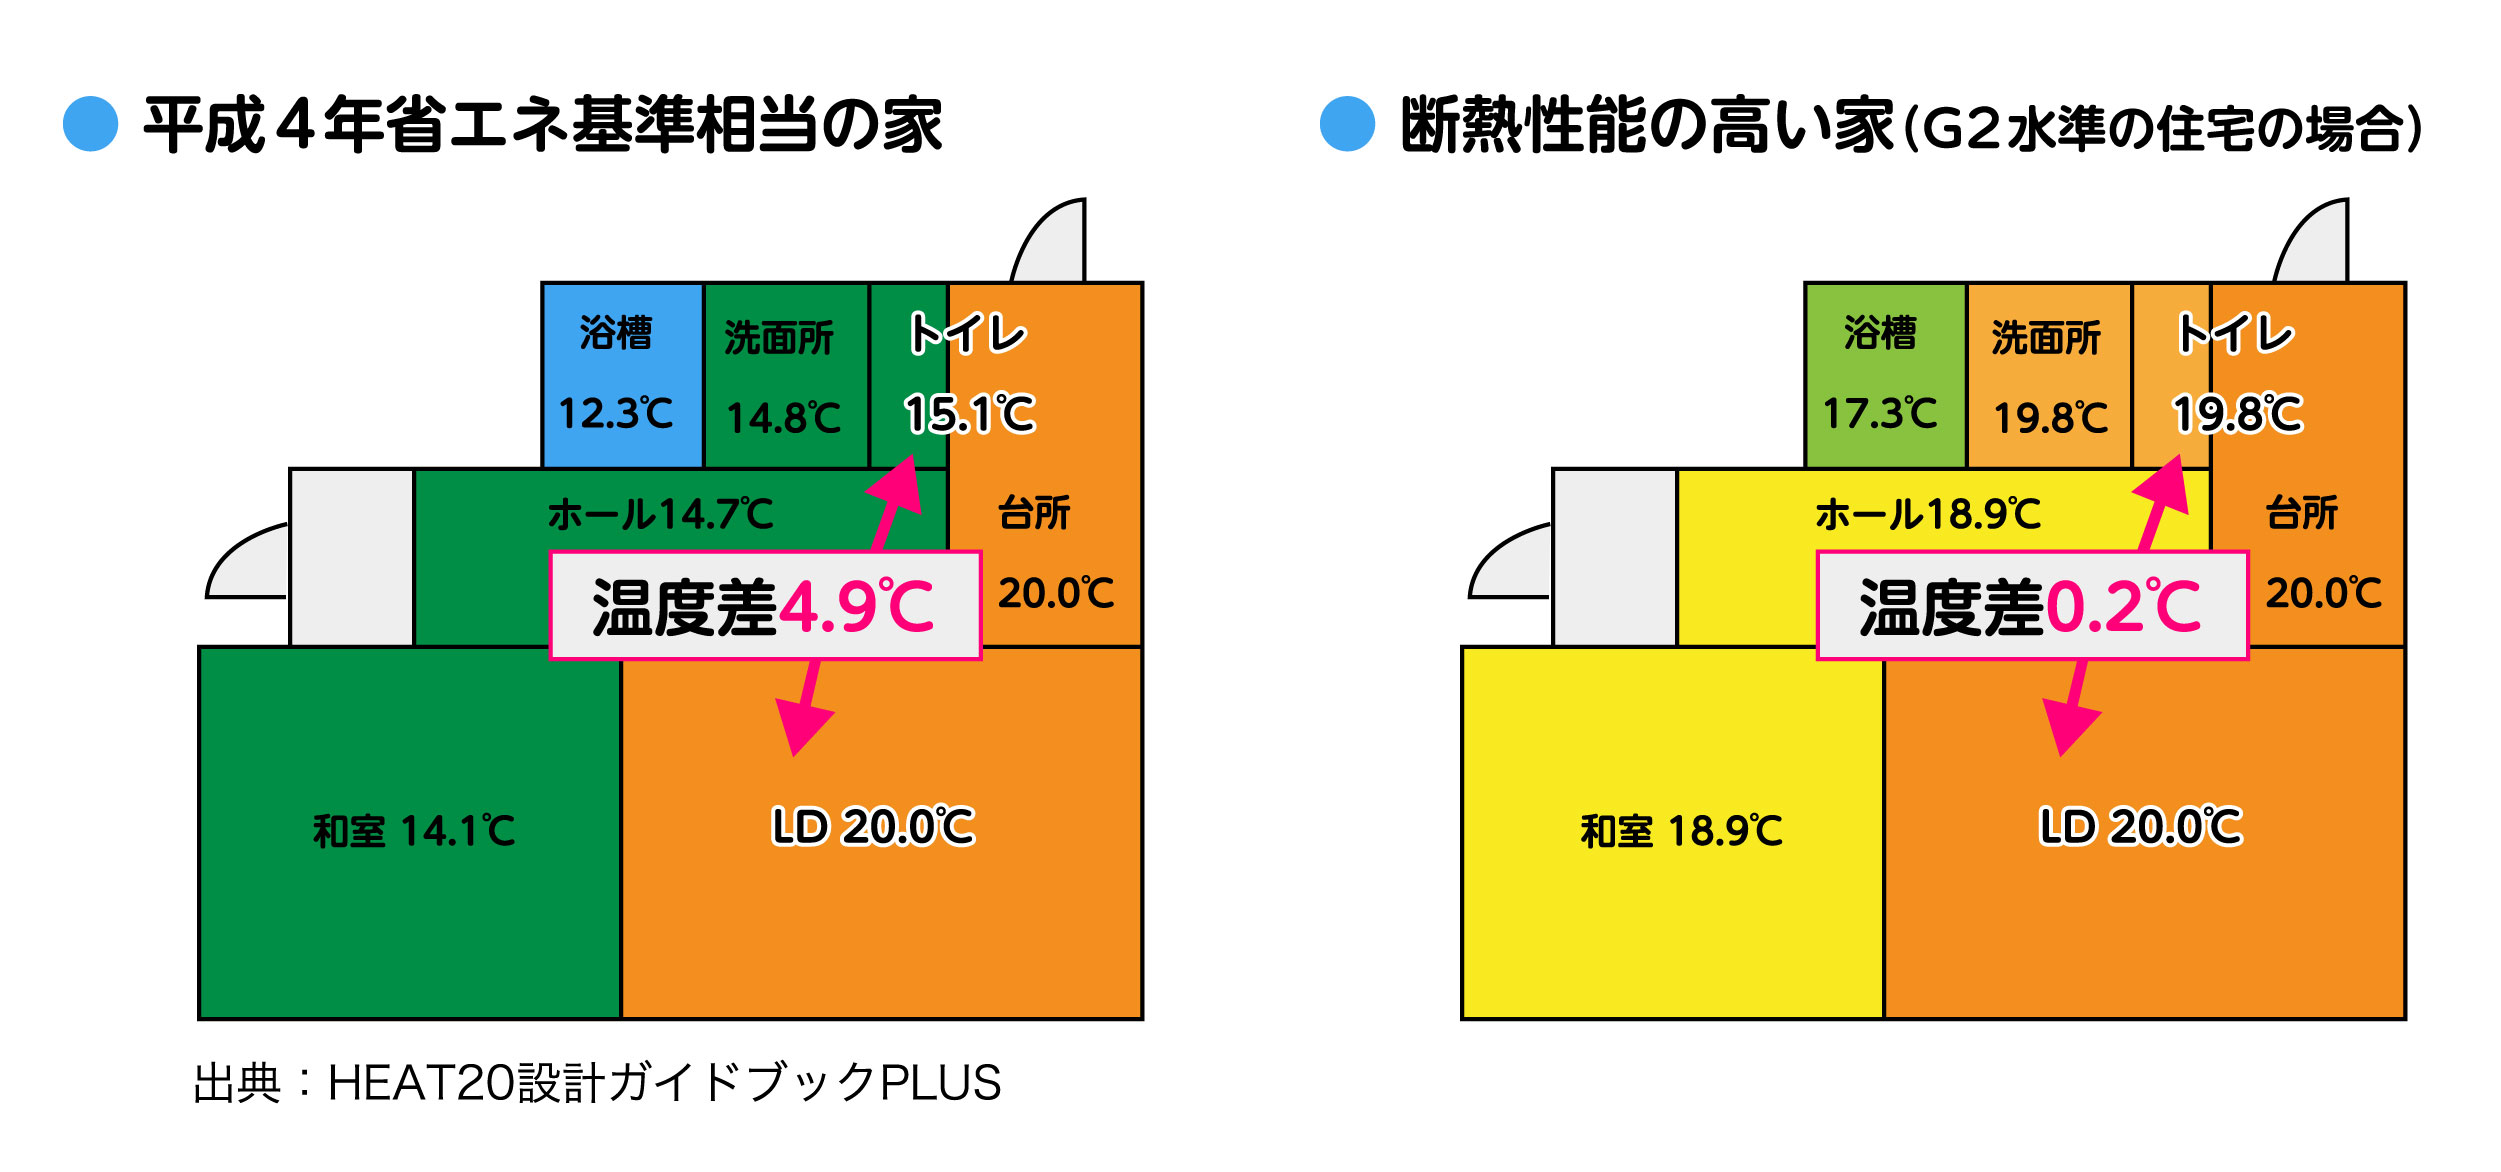 平成4年省エネ基準相当の家 断熱性能の高い家(G1水準の住宅の場合) イメージ図